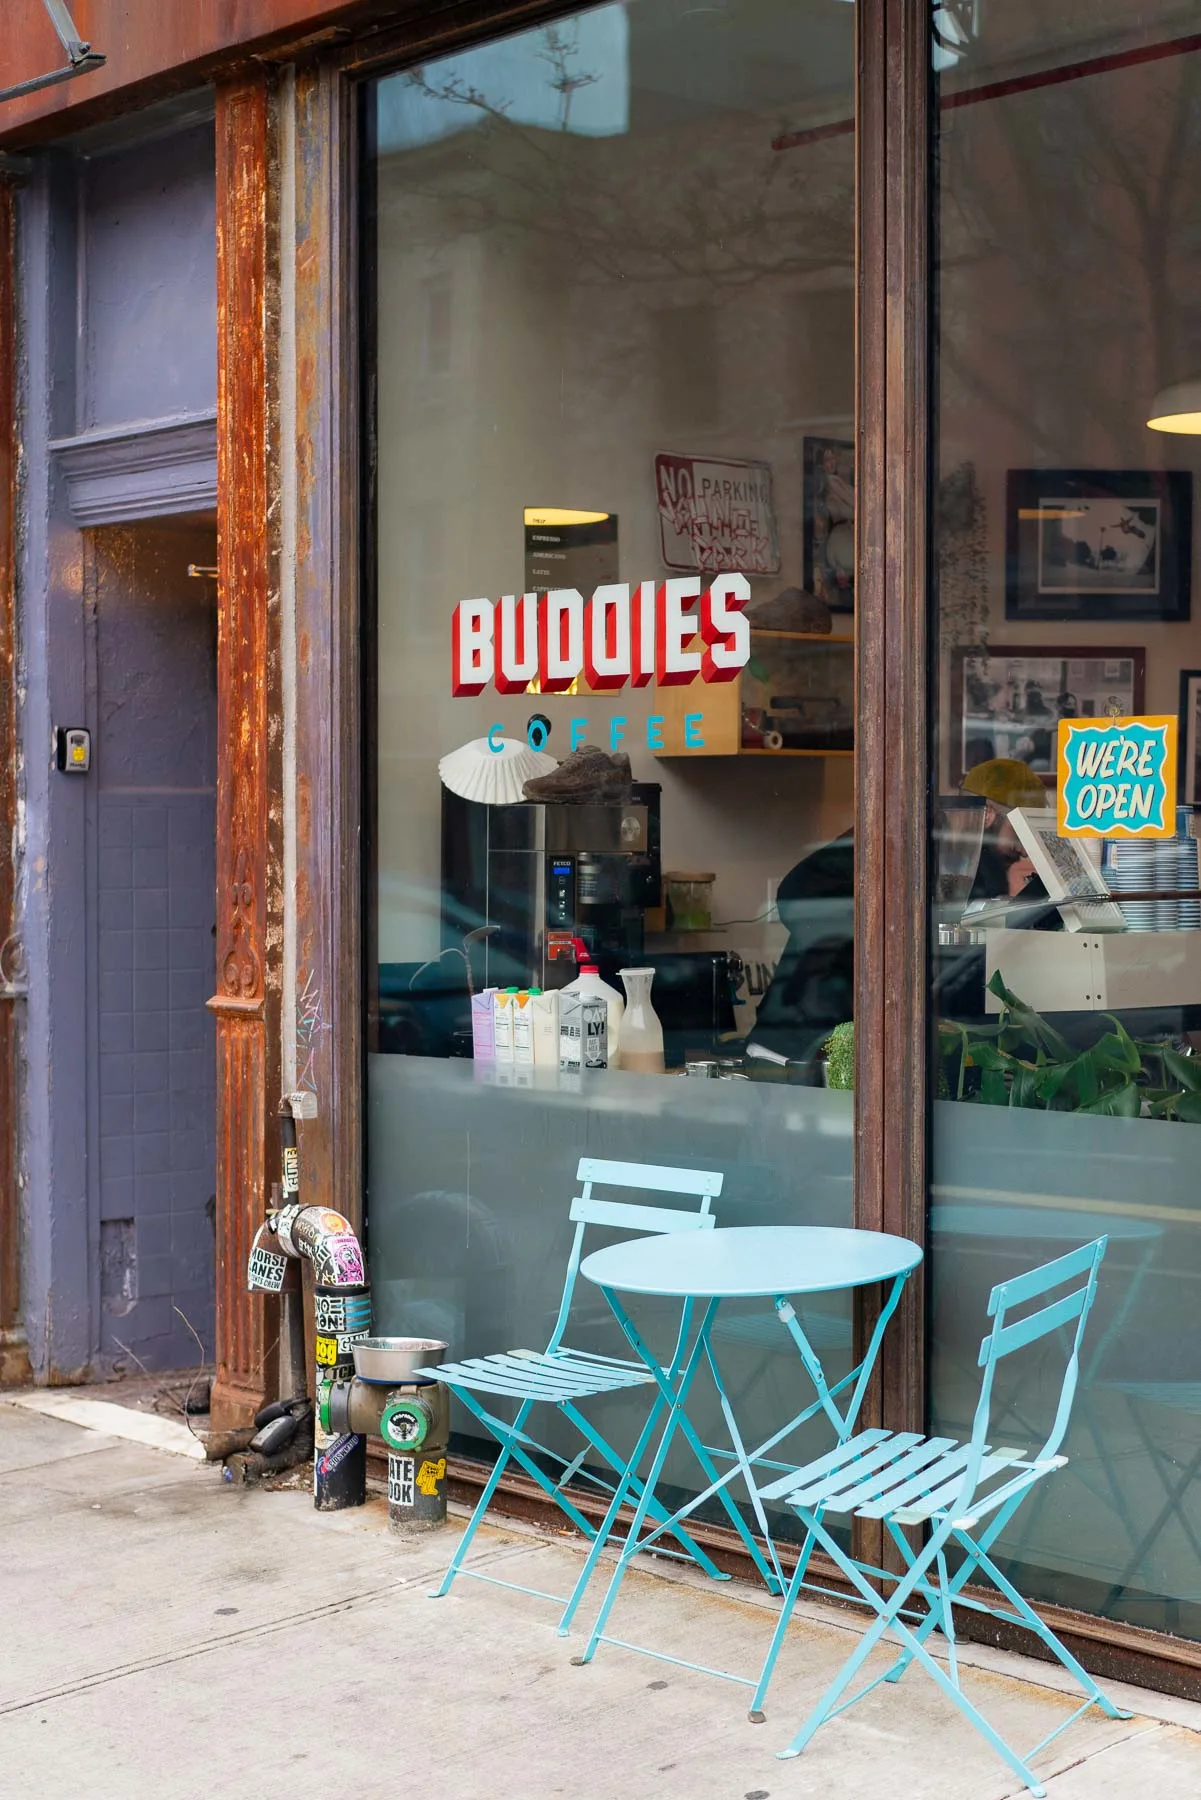 Buddies Coffee Shop in Williamsburg, Brooklyn